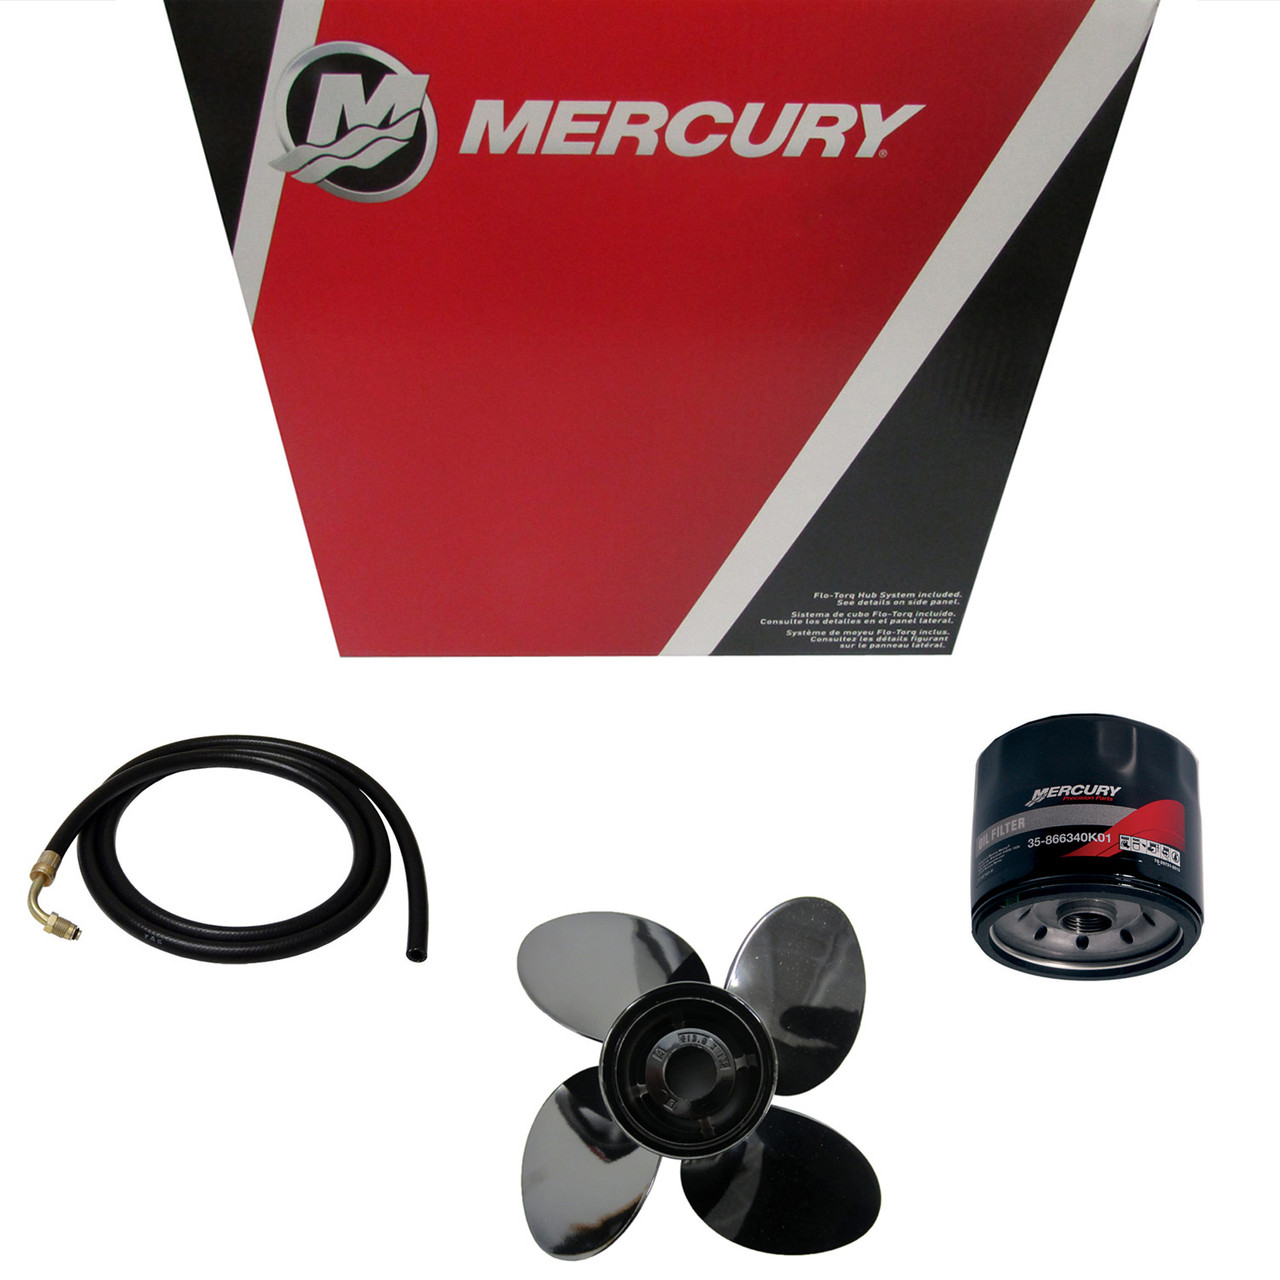 Mercury Marine / Mercruiser New OEM Nla, 32-8M0044836